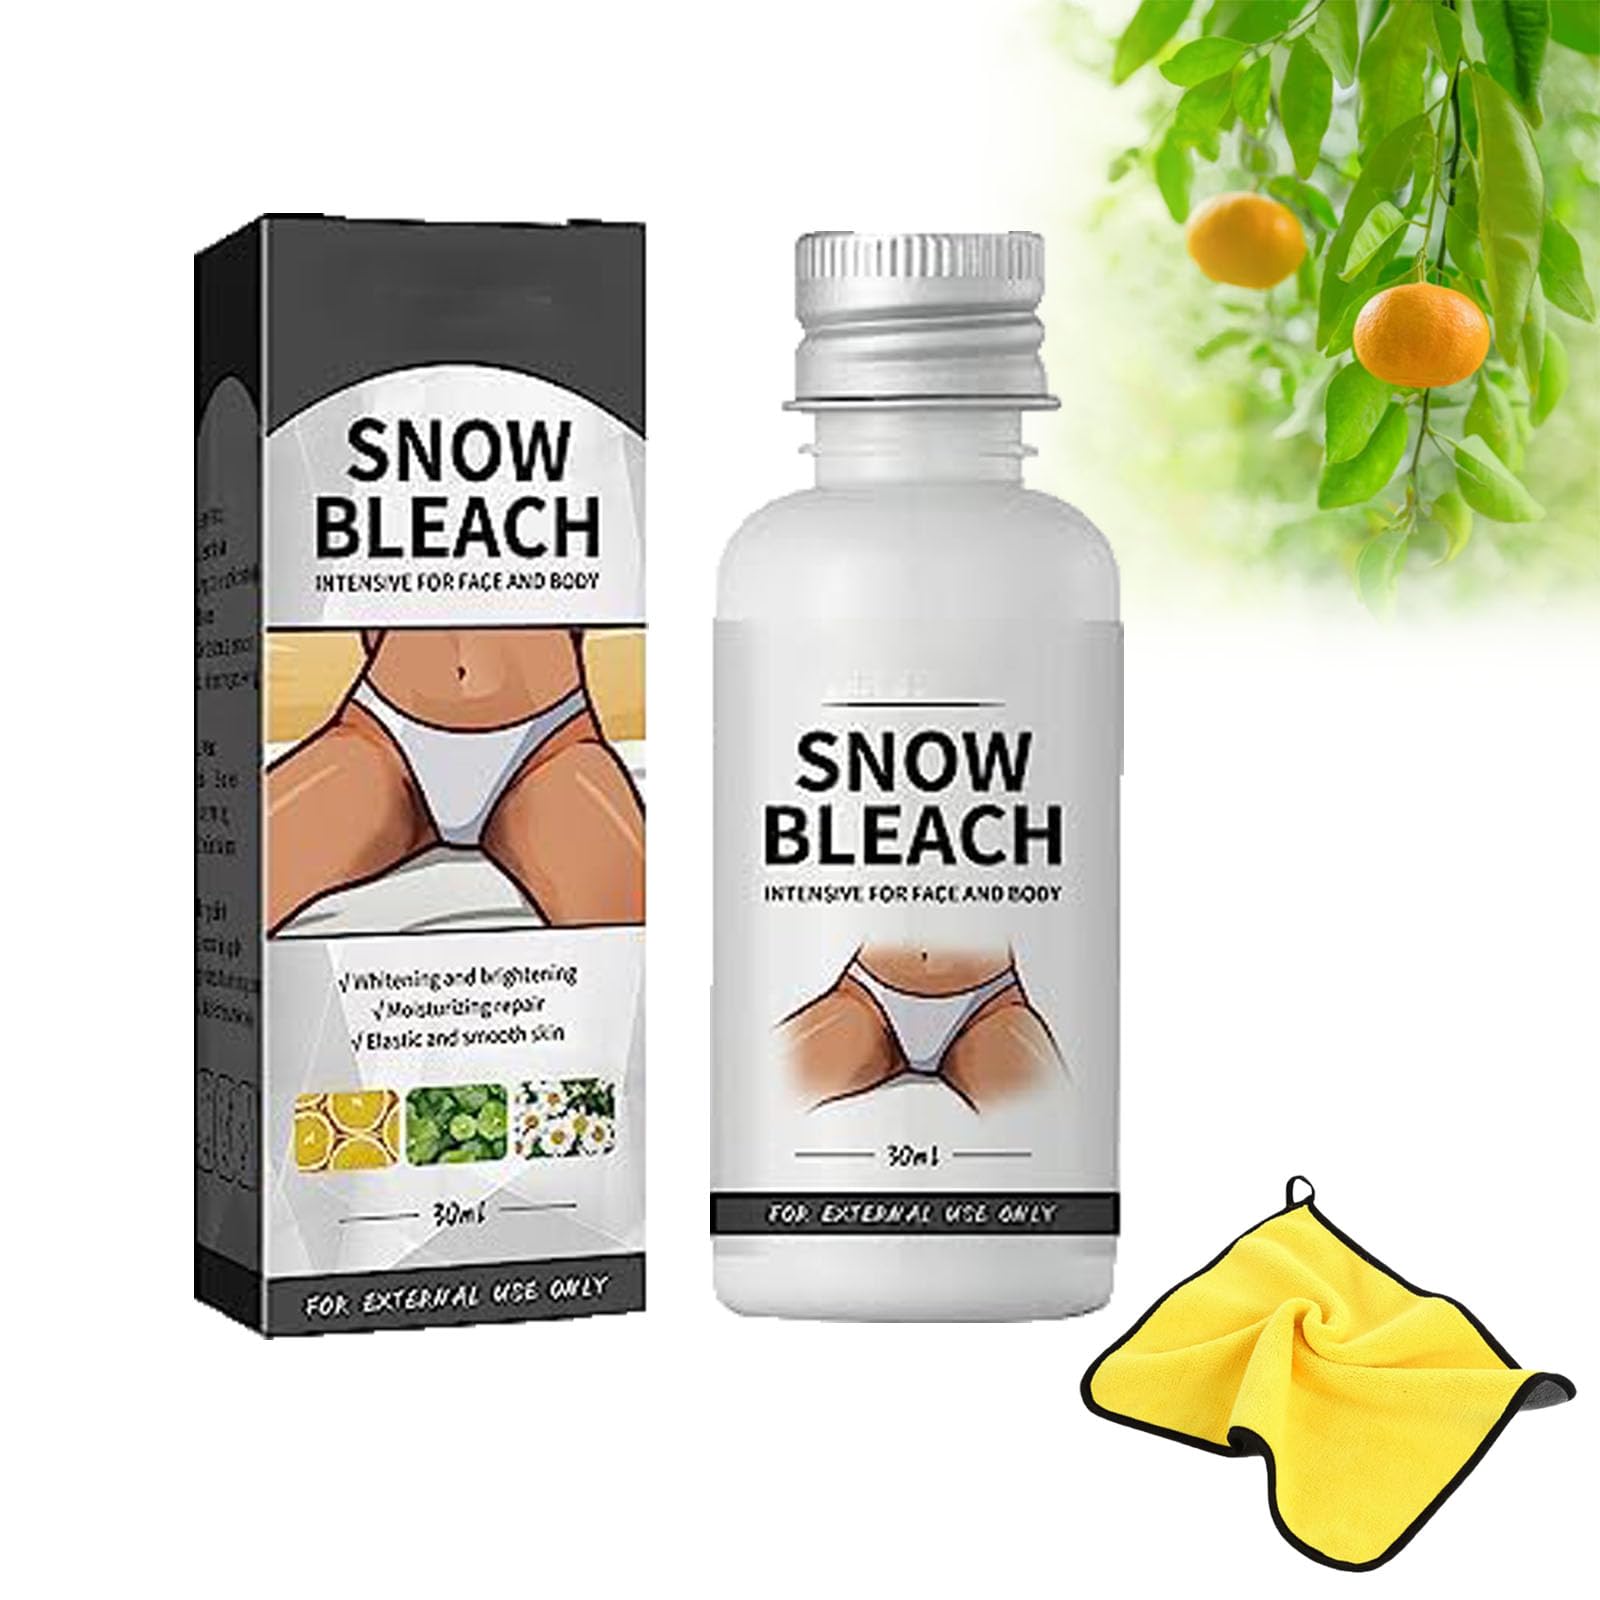 Snow Bleach Cream, Snow Bleaching, Snow Bleach Cream For Private Part Underarm Whiten (1 PCS)